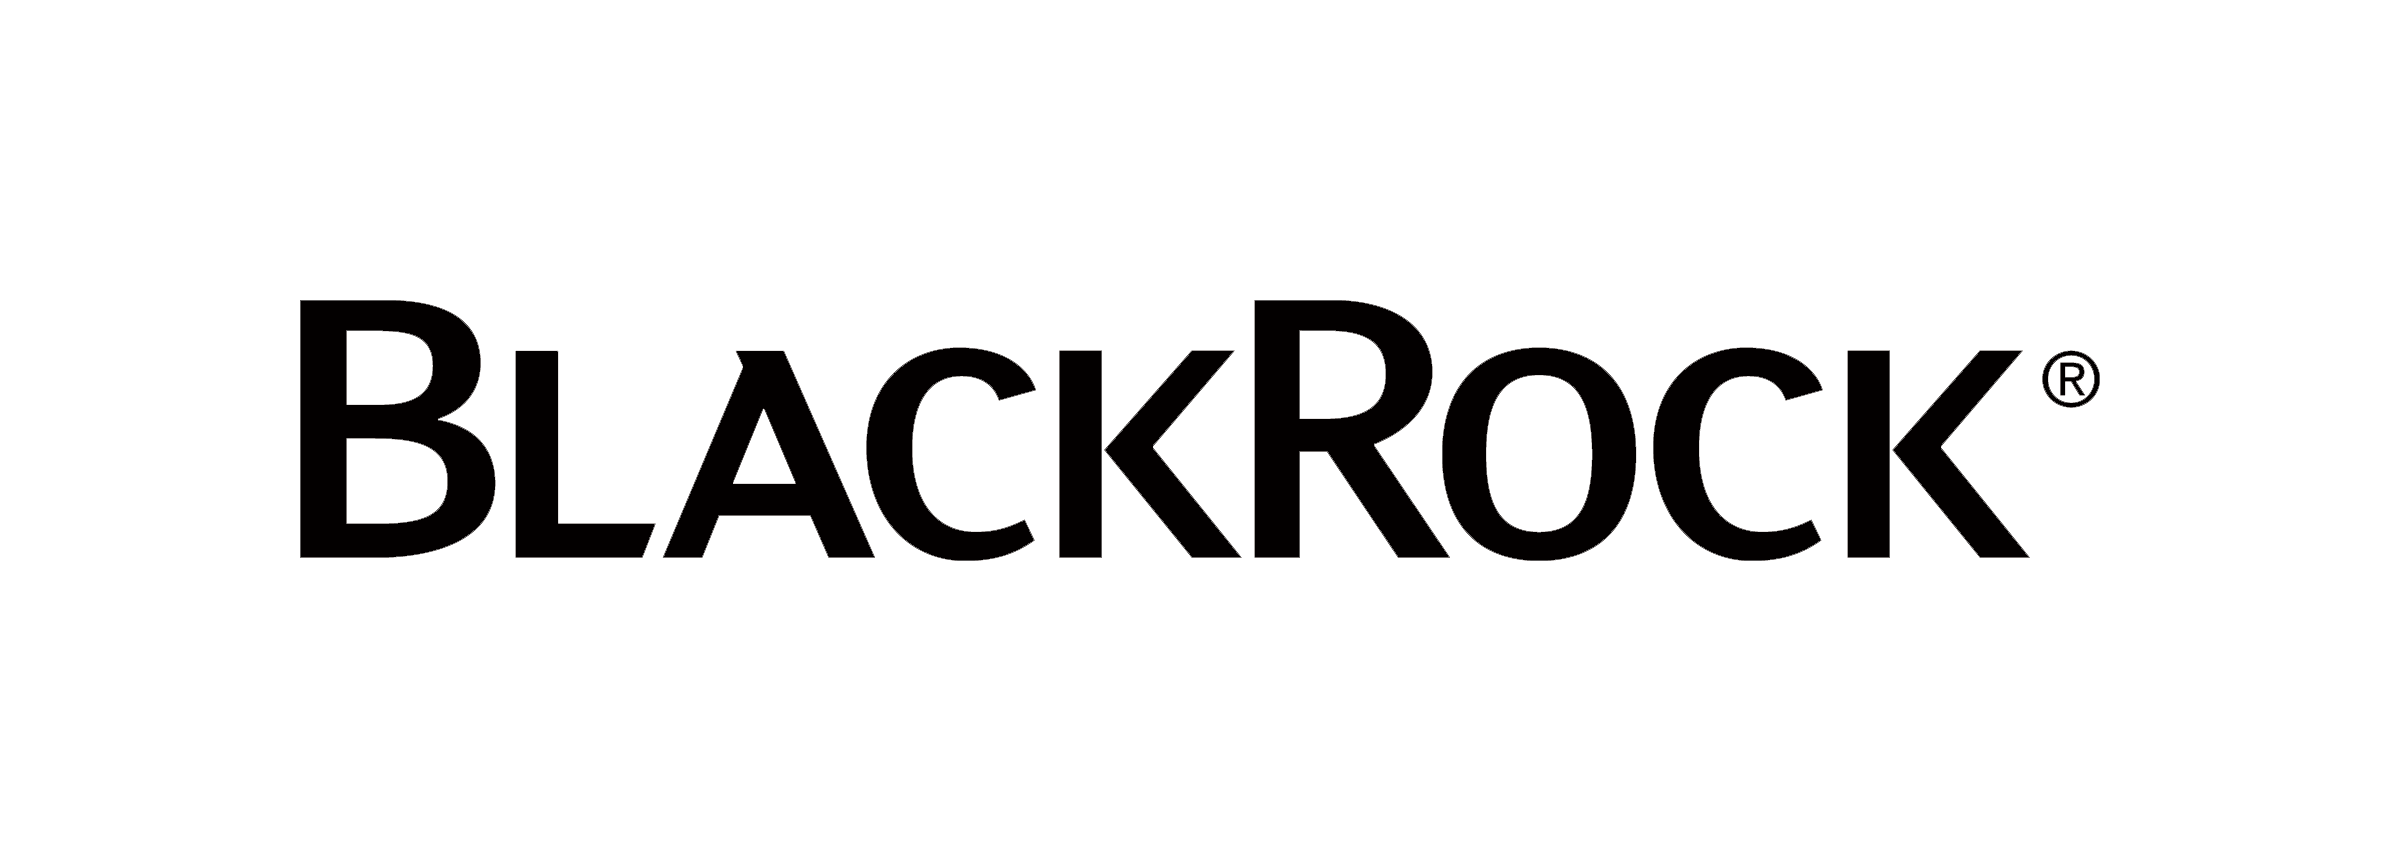 BlackRock Global Funds - Global Multi-Asset Income Fund